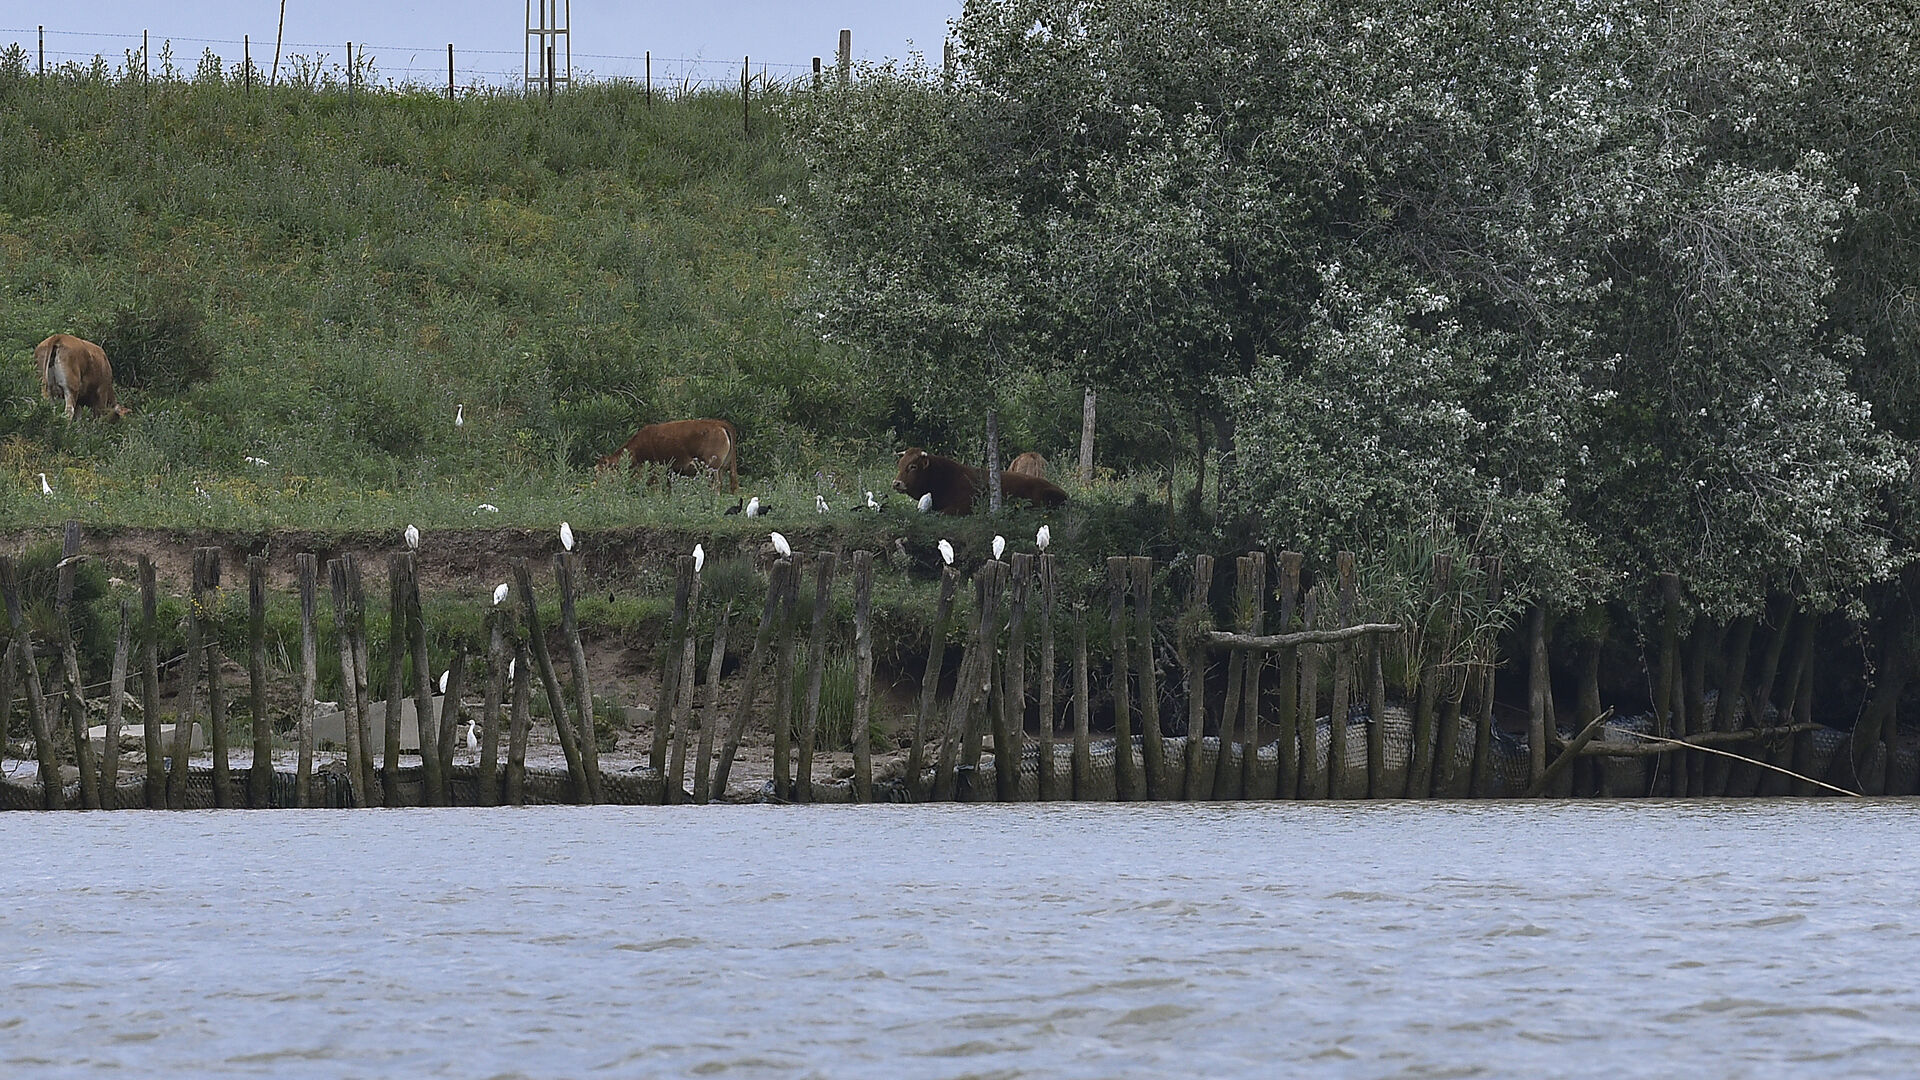 El paseo en barco permite observar la ganader&iacute;a de la zona.